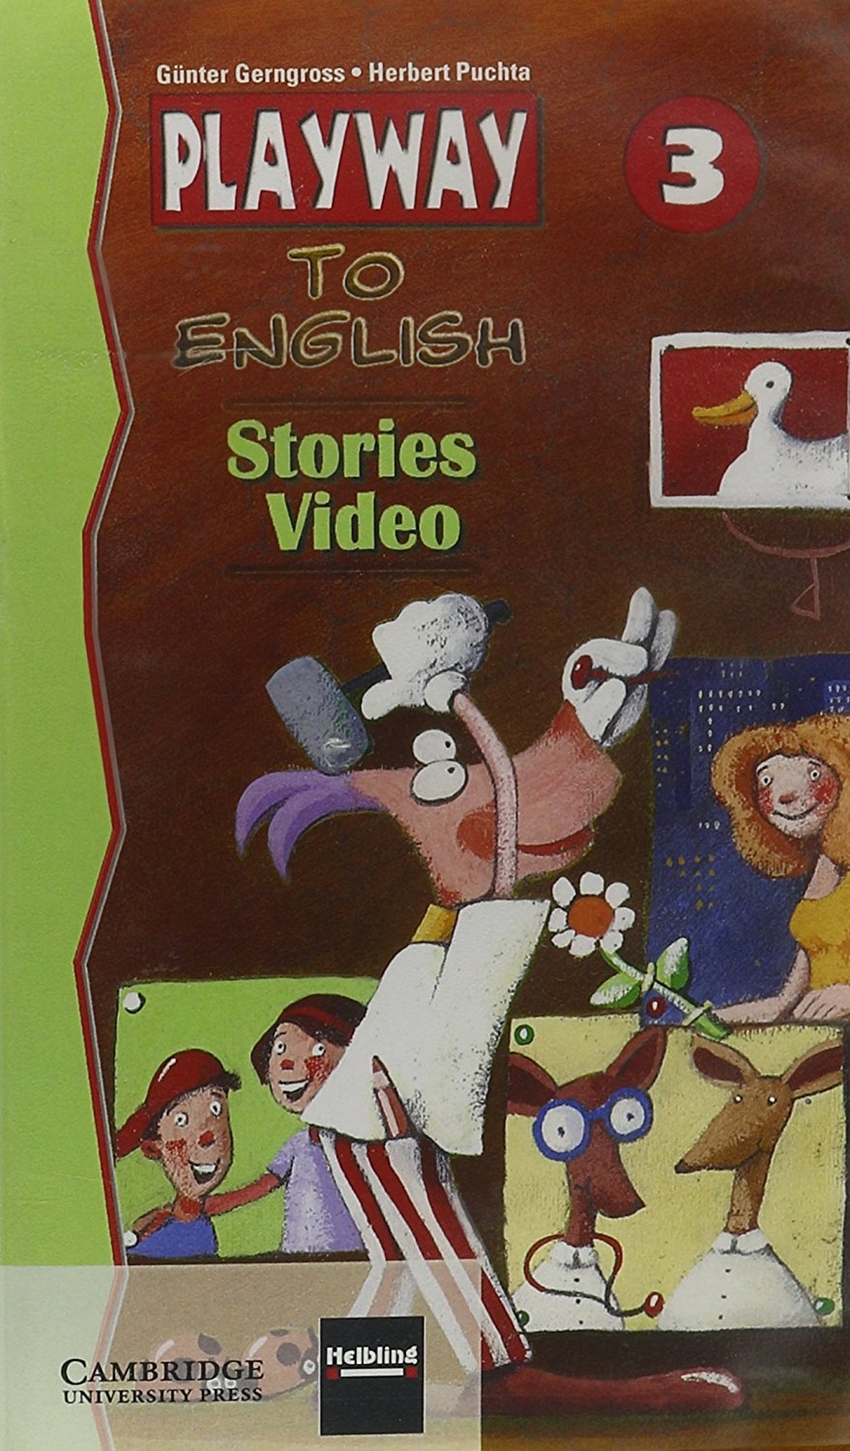 Herbert Puchta, Gunter Gerngross  VHS. Playway to English 3 Stories Video PAL 